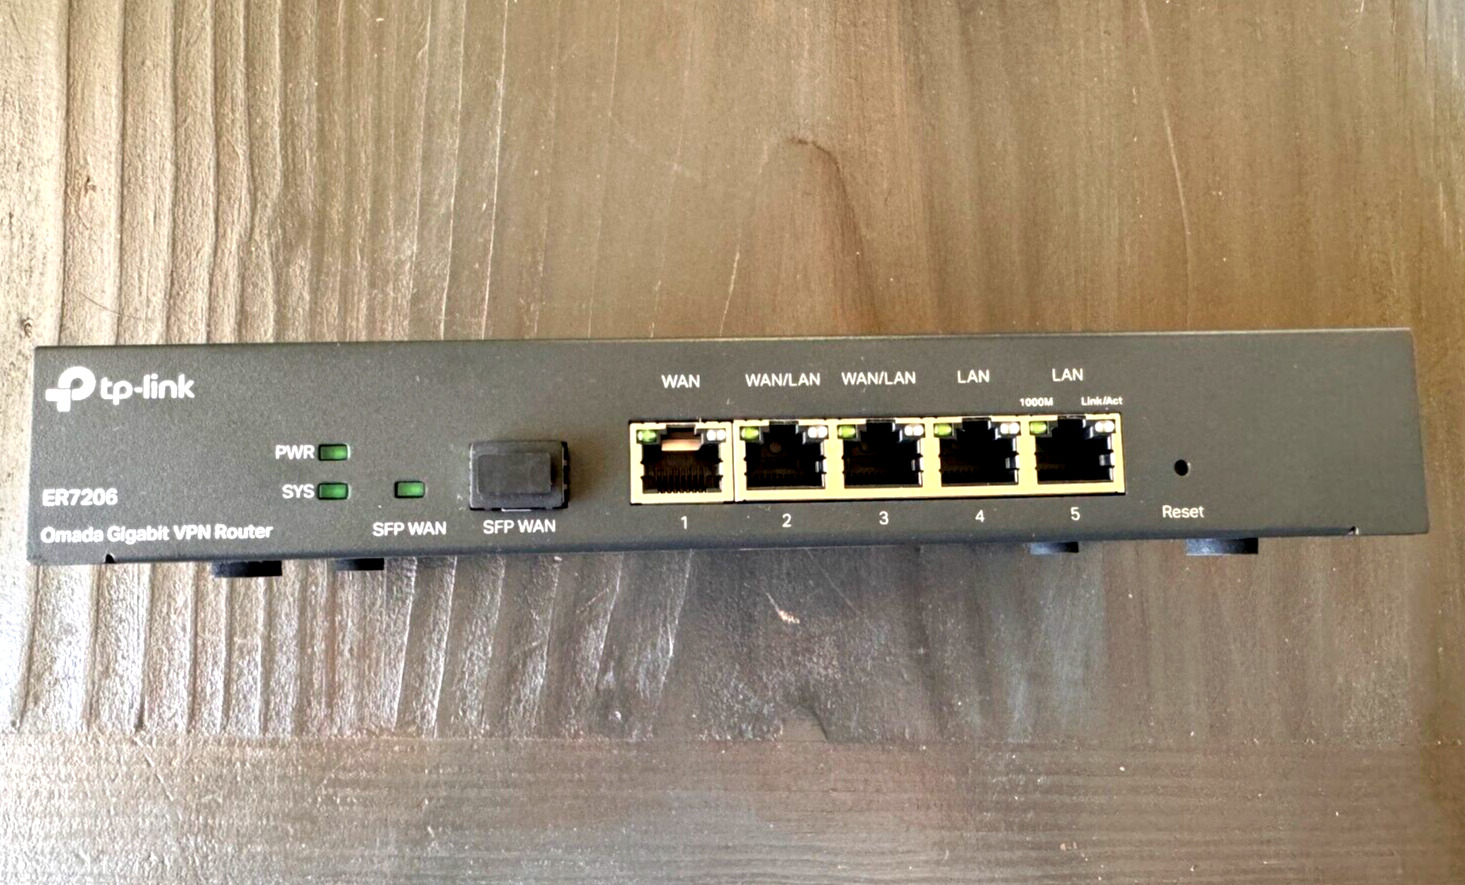 TP-Link ER7206 Omada 5-Port Gigabit Multi-WAN VPN Router, 2 Config WAN/LANs